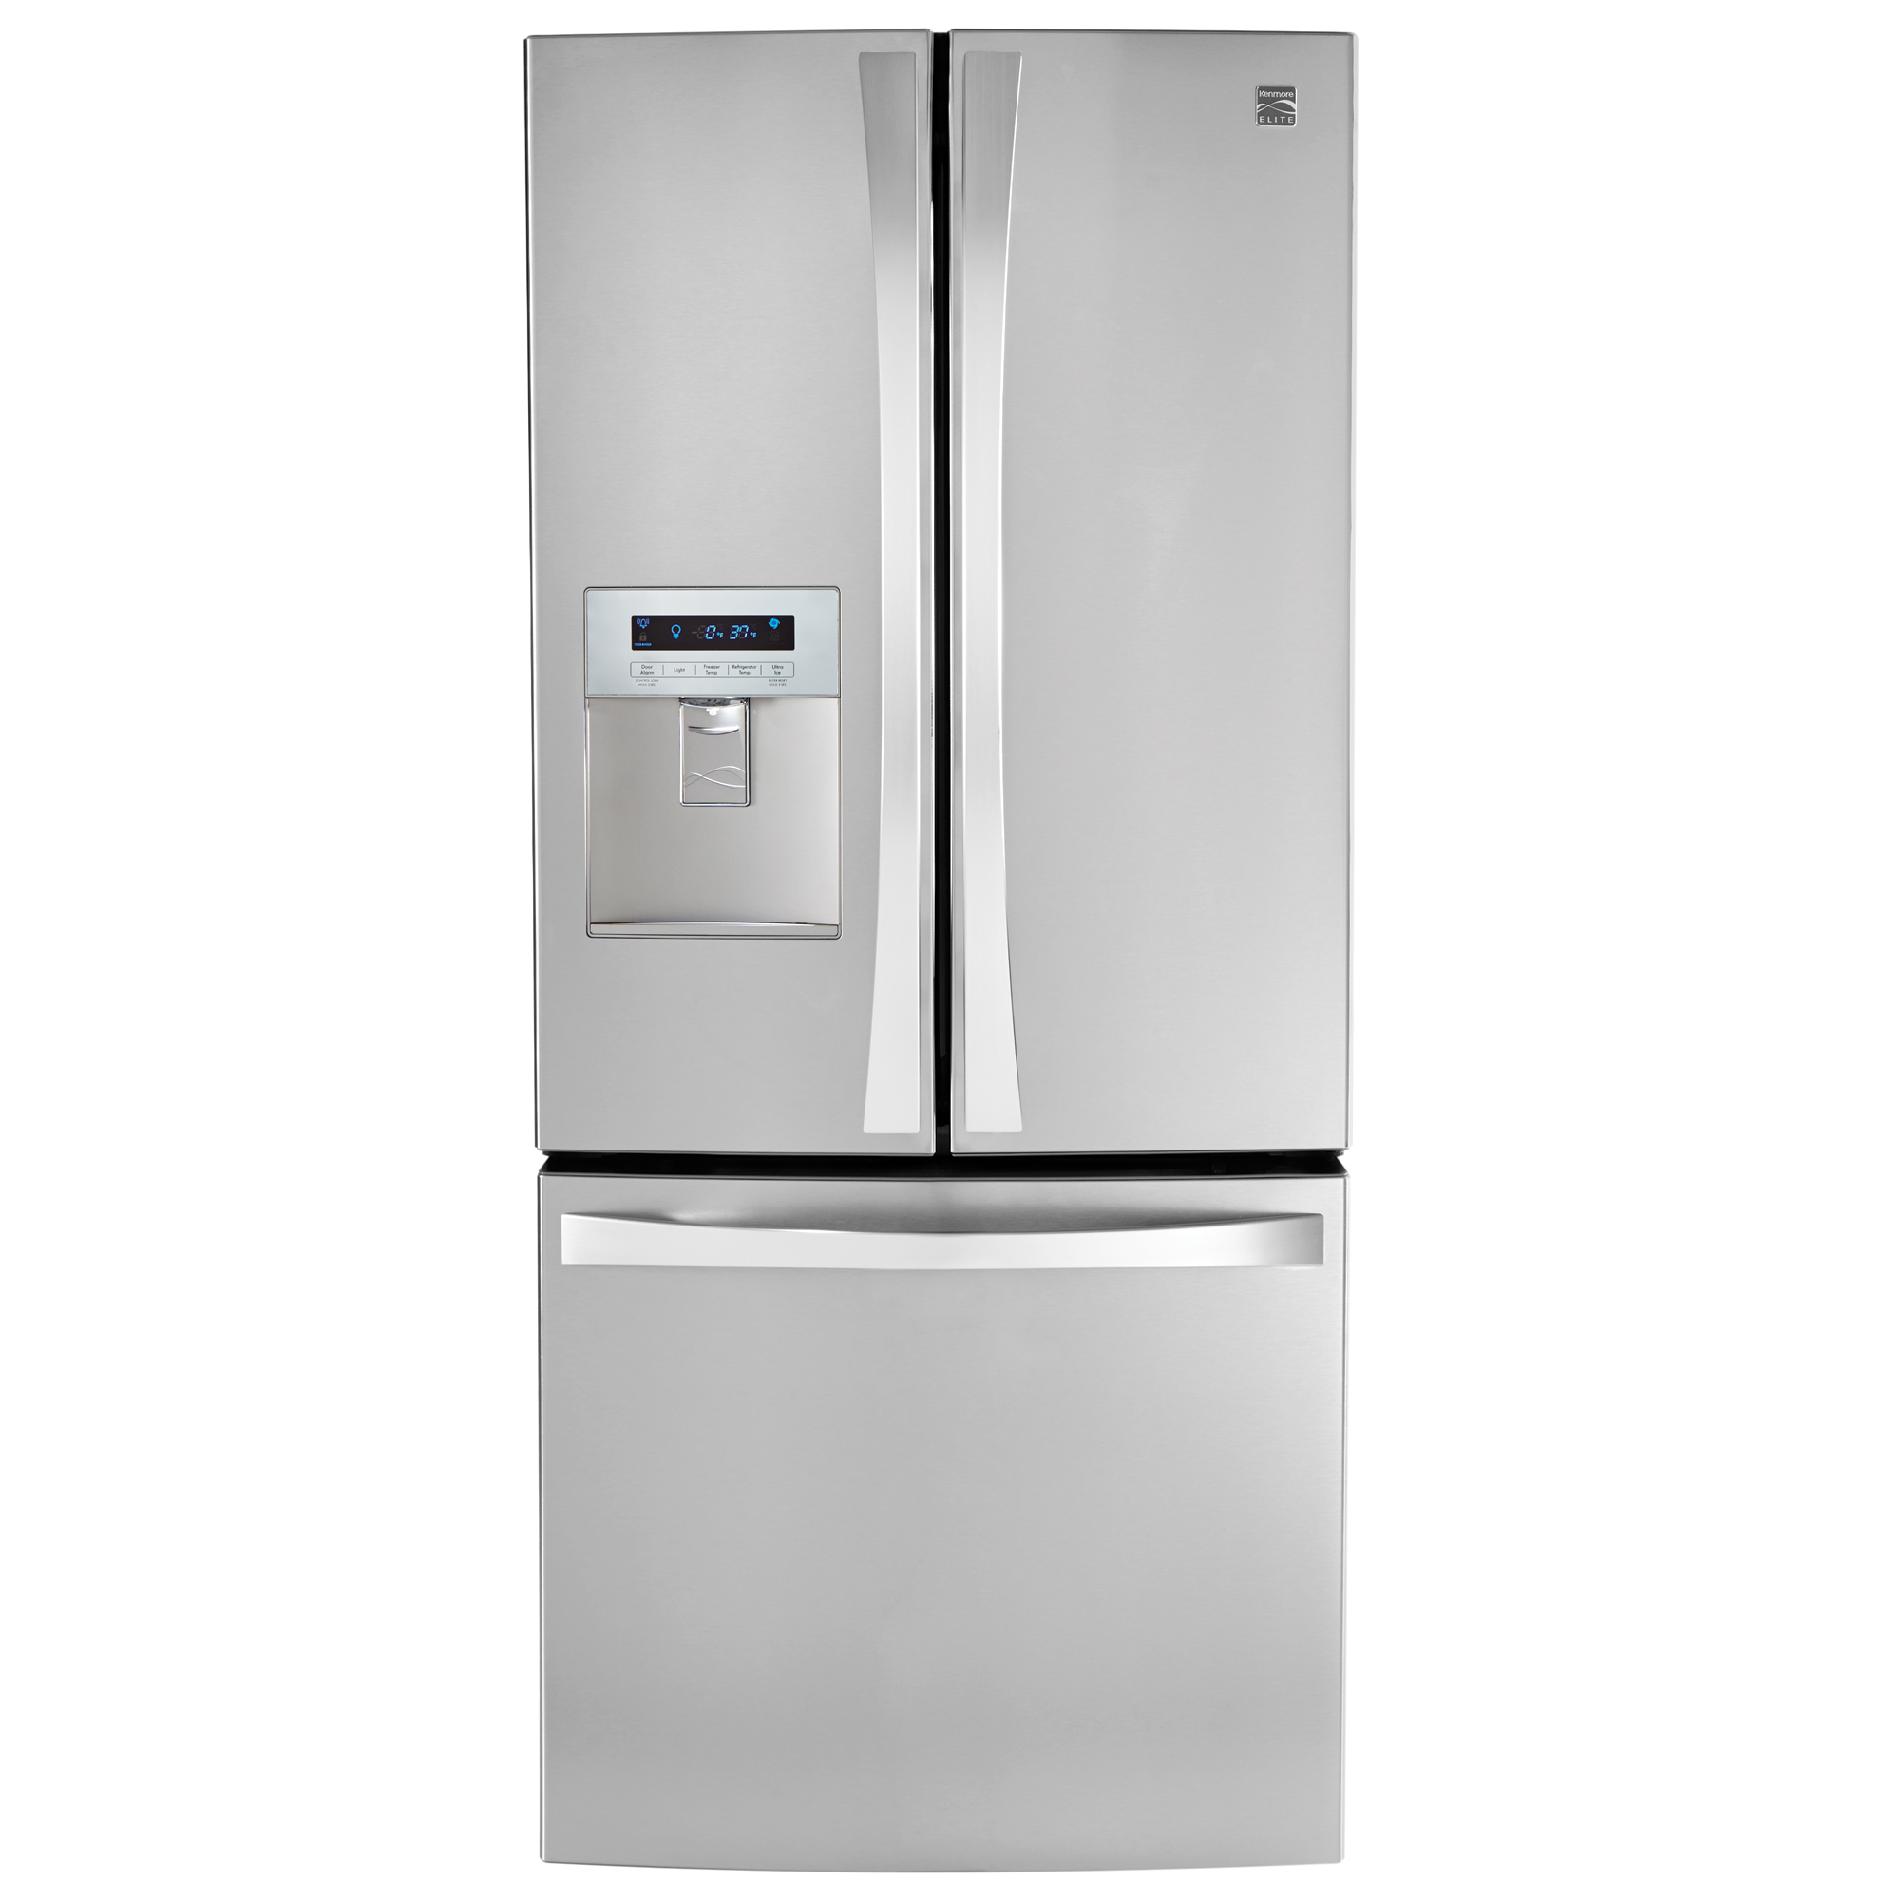 Kenmore Elite 71323 21.8 cu. ft. French Door Bottom Freezer Refrigerator